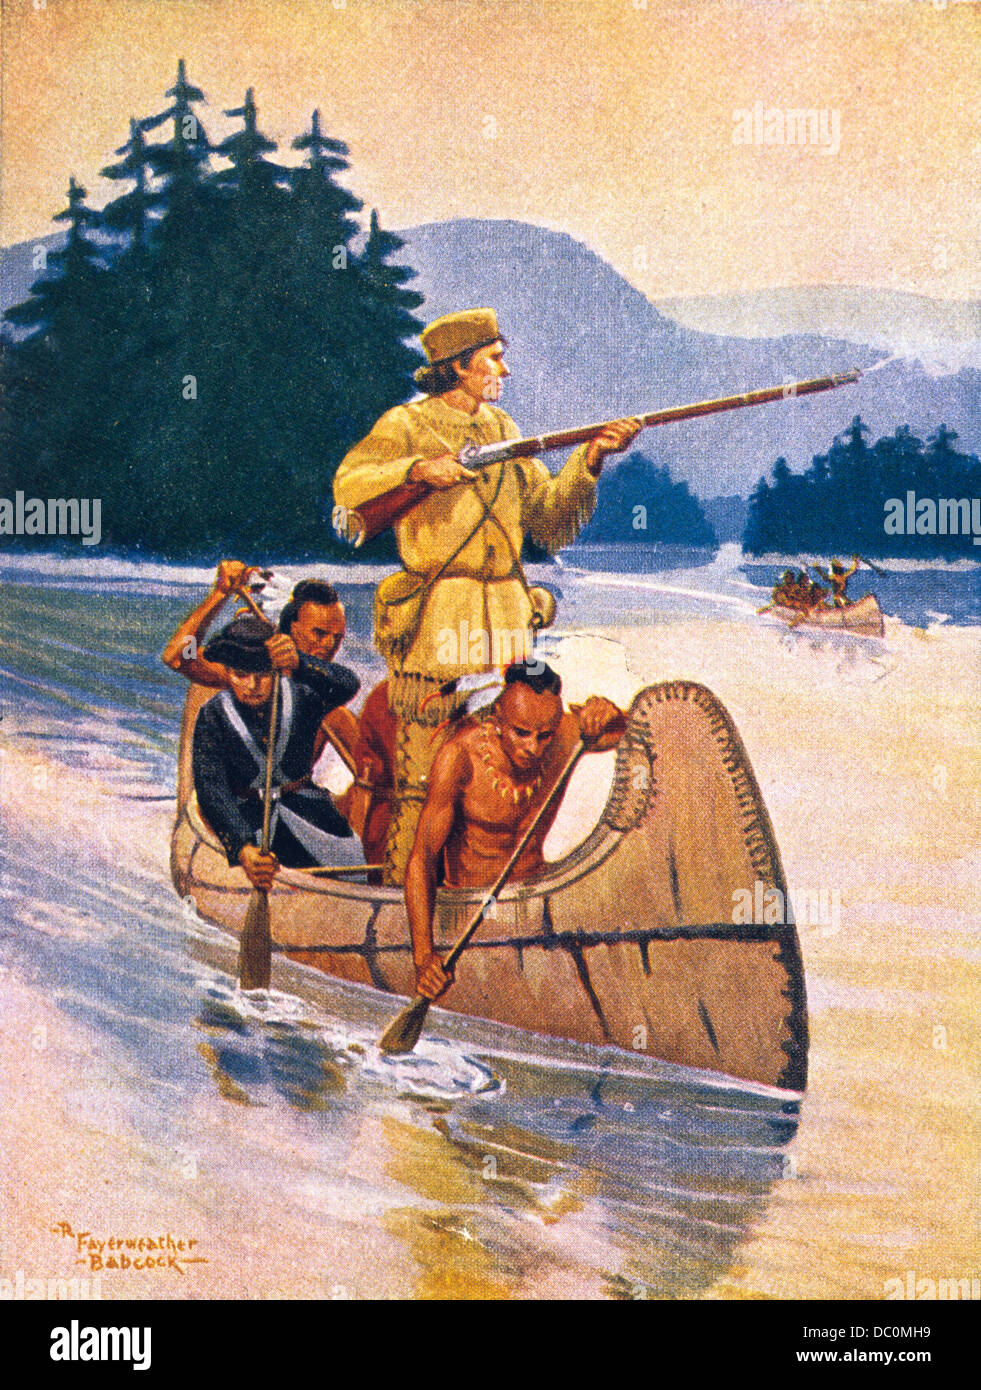 La course en canots par R F BABCOCK MONTRE UN CANOT en canot par les Amérindiens l'homme vêtu de daim FUSIL TIRE Banque D'Images